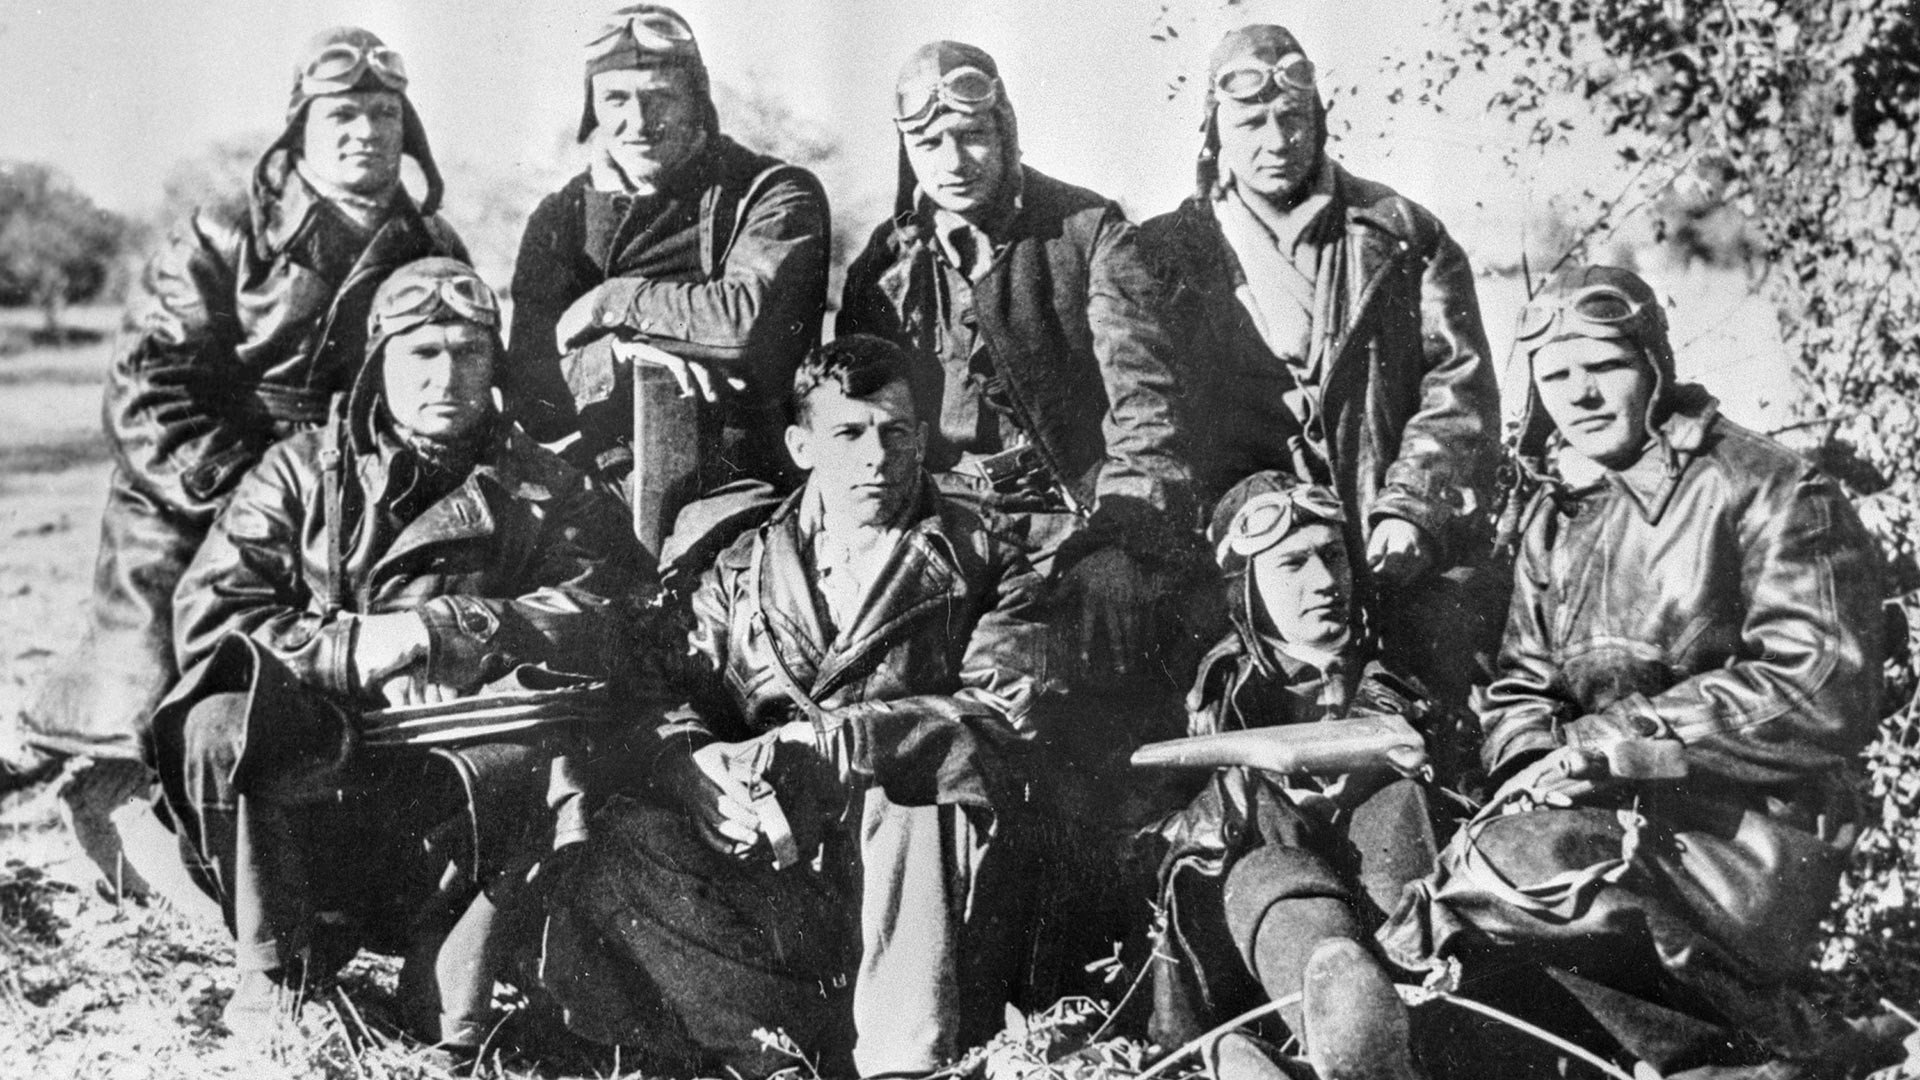 Pilotos soviéticos cerca de Madrid.
